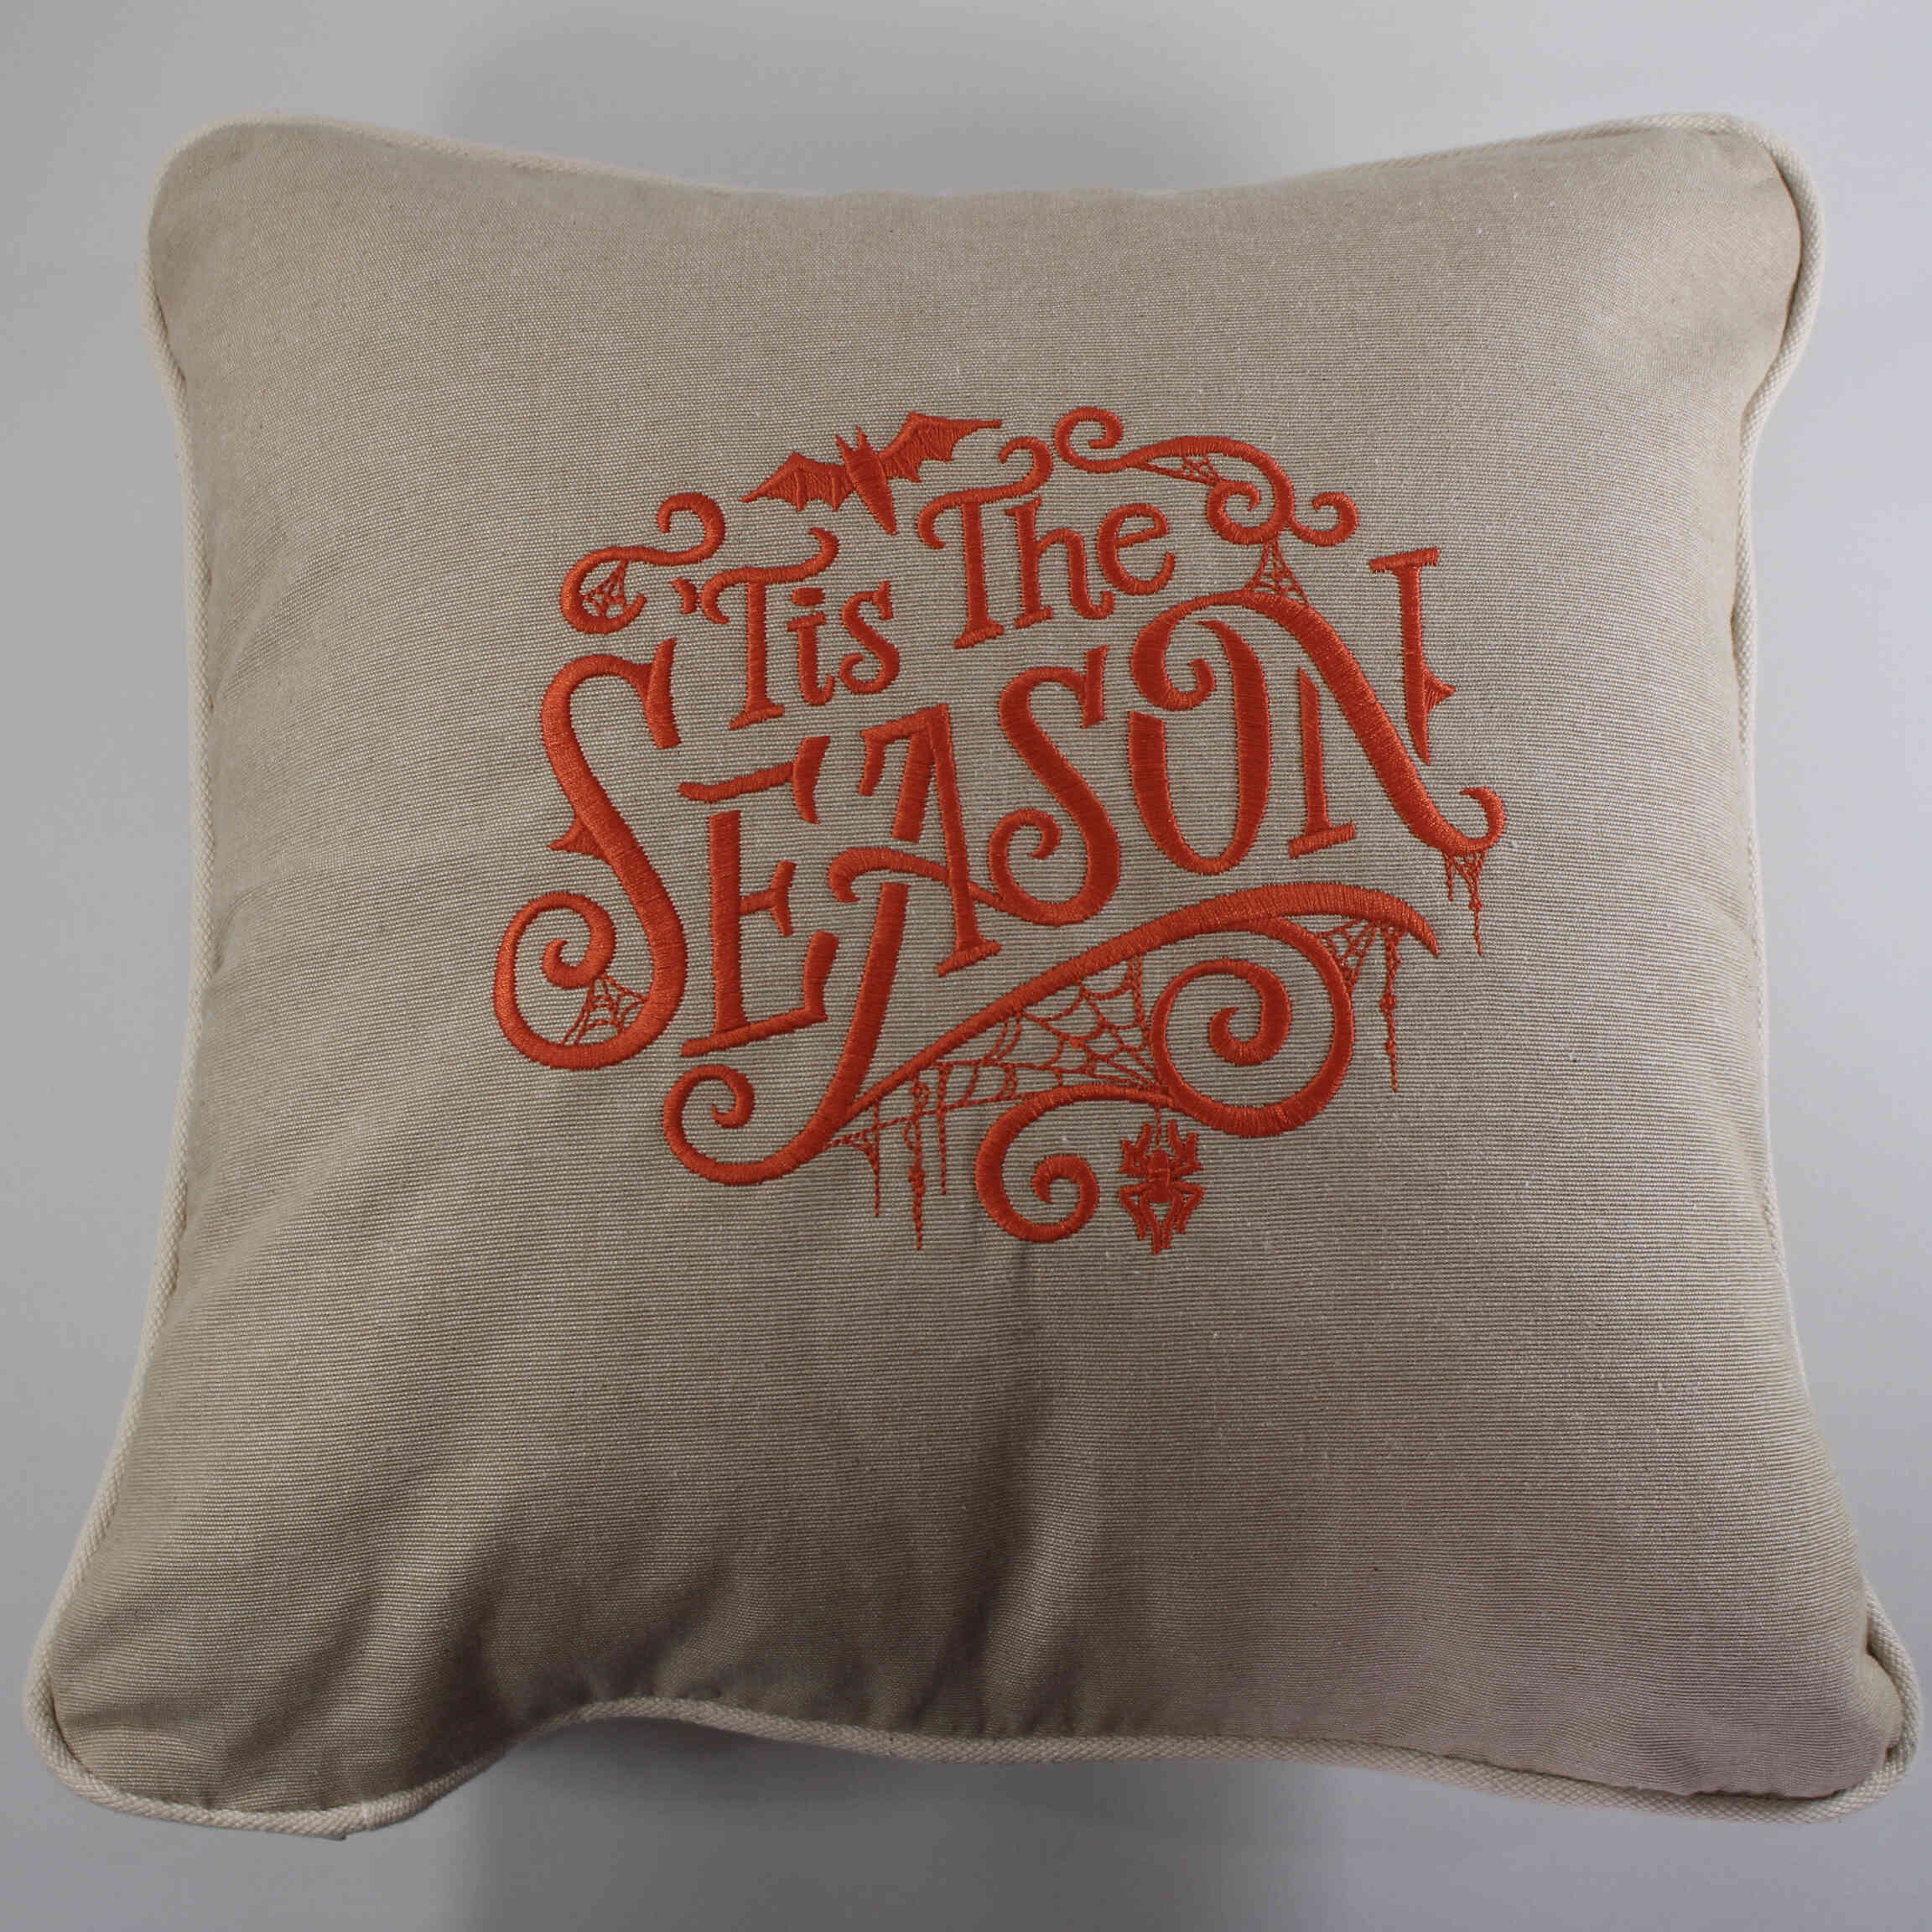 Embroidered Throw Pillow - Halloween "Tis the Season"